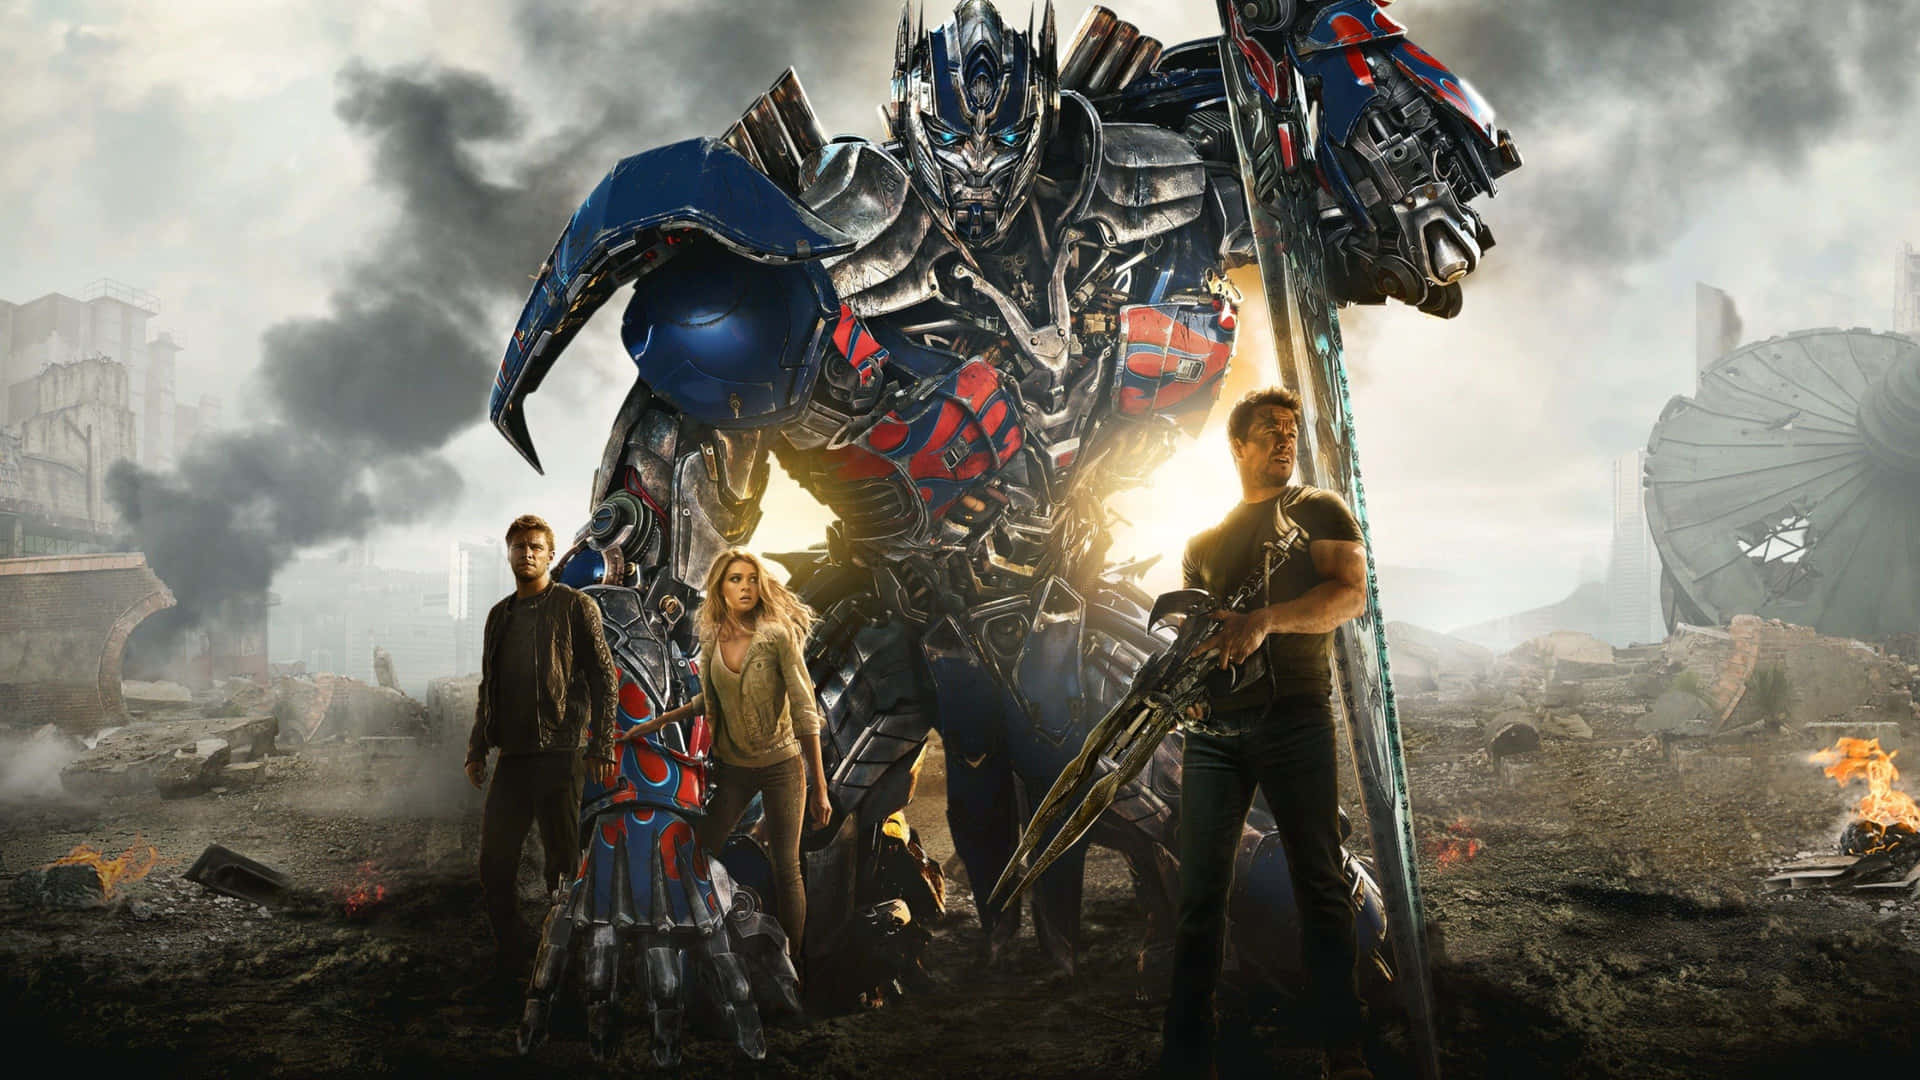 Imagenlos Transformers Están Listos Para La Batalla.